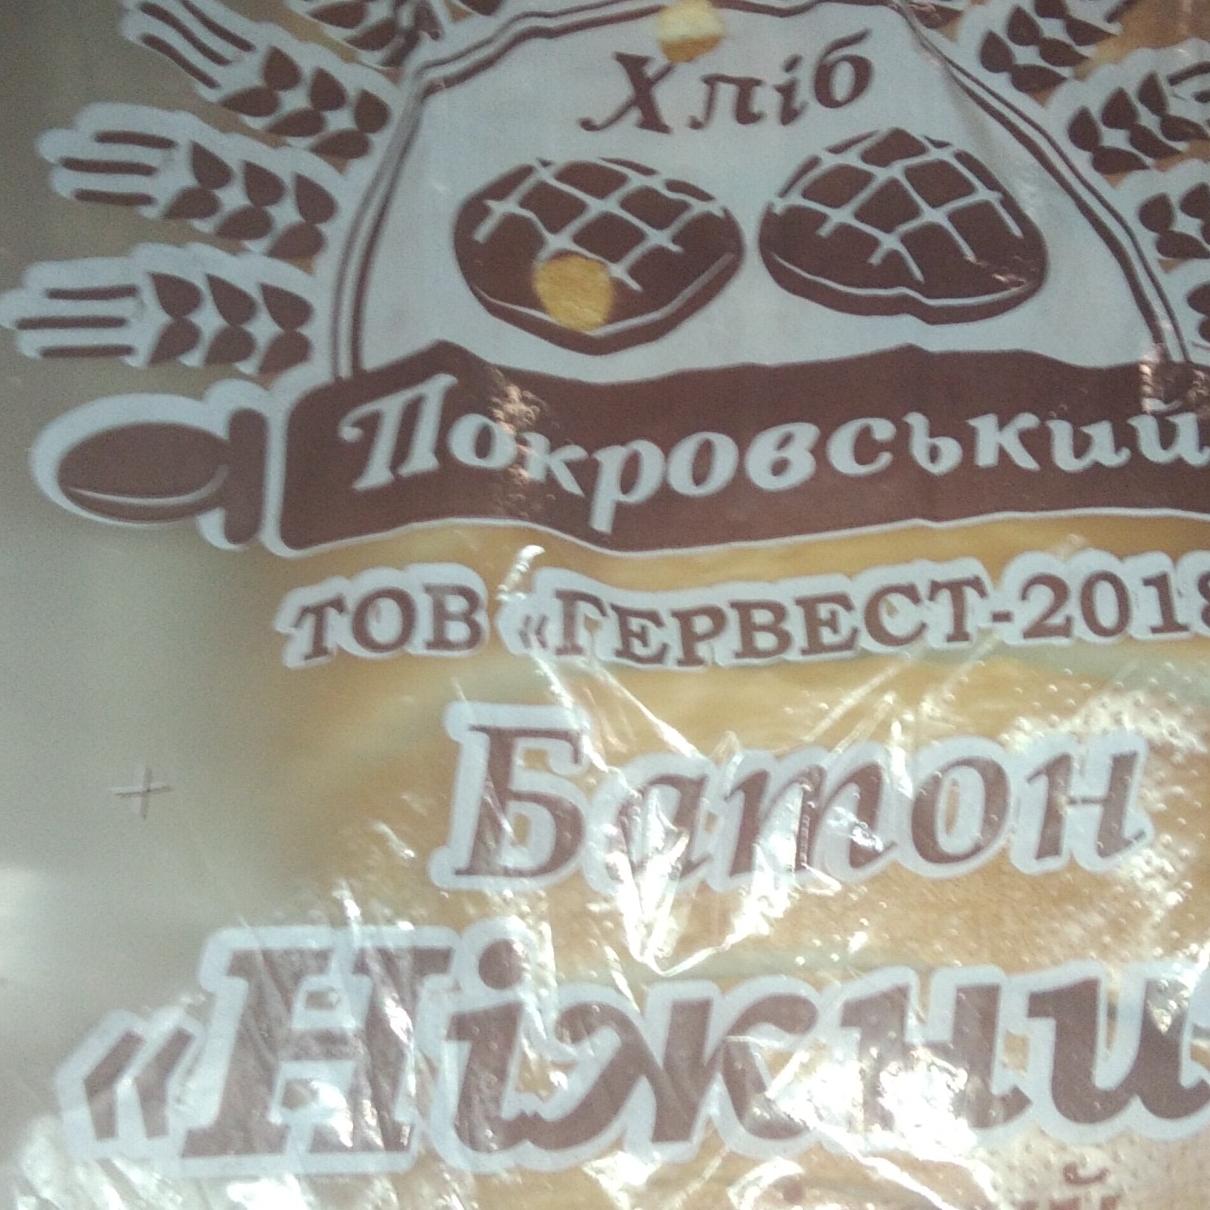 Фото - Батон Нежный Покровский хлеб